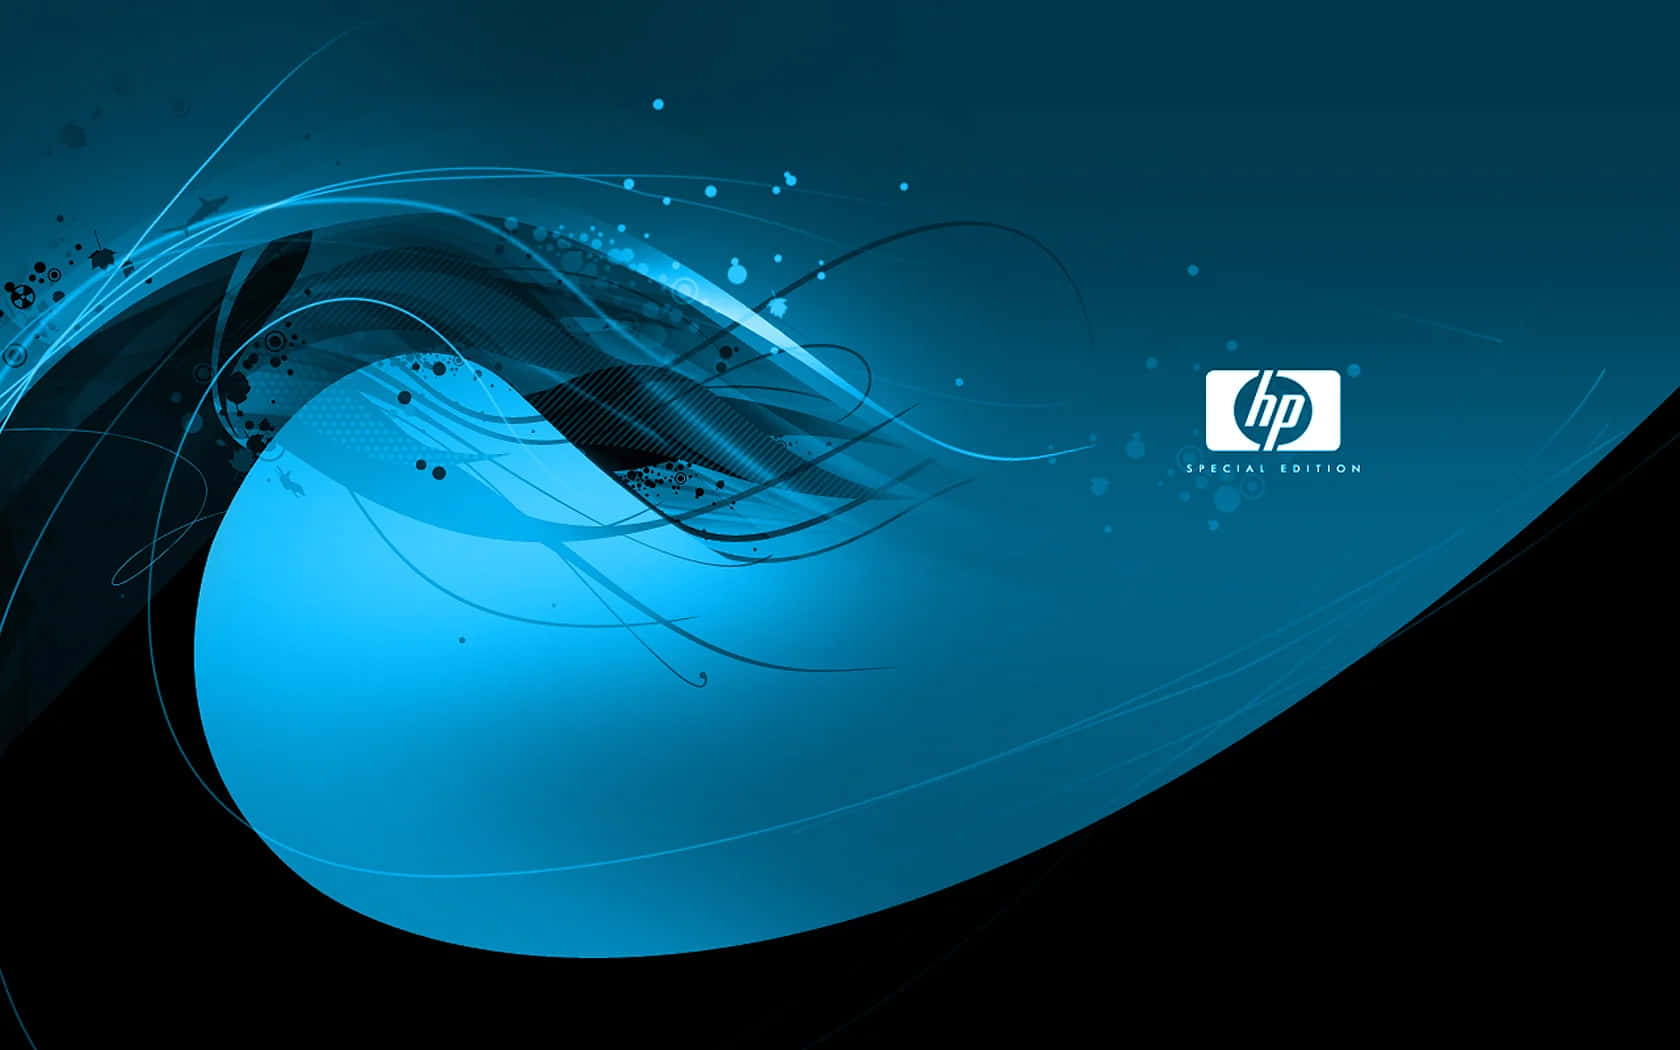 Tag styringen af din fremtid med HP-teknologi.